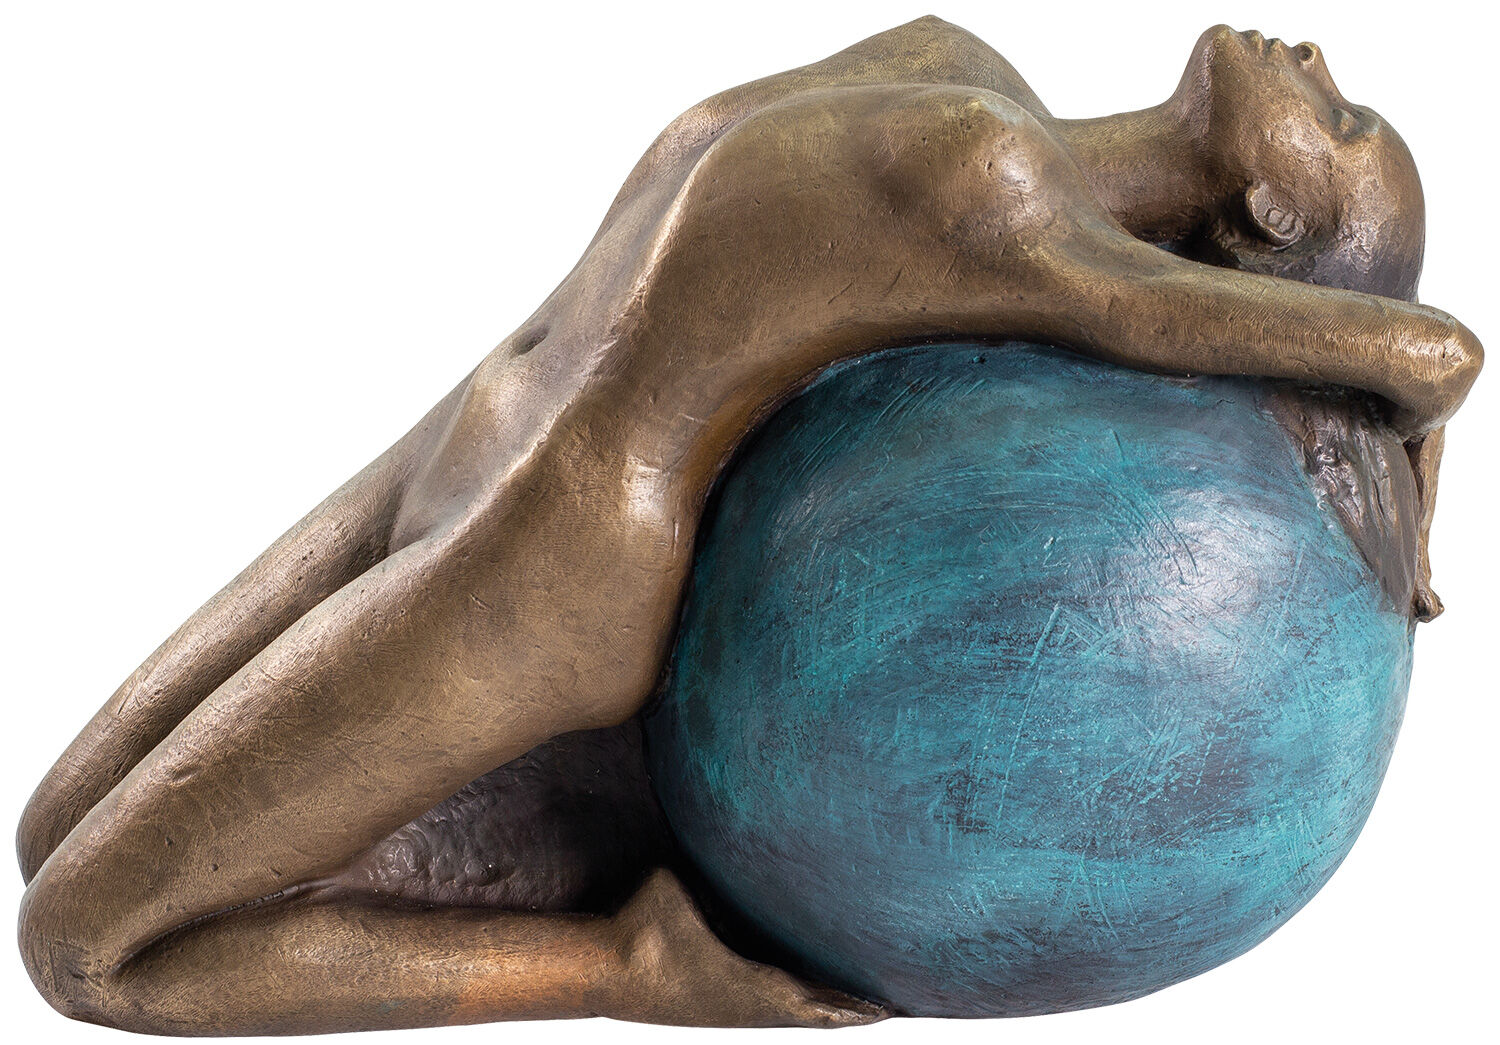 Skulptur "Letting Go", brons von Sorina von Keyserling